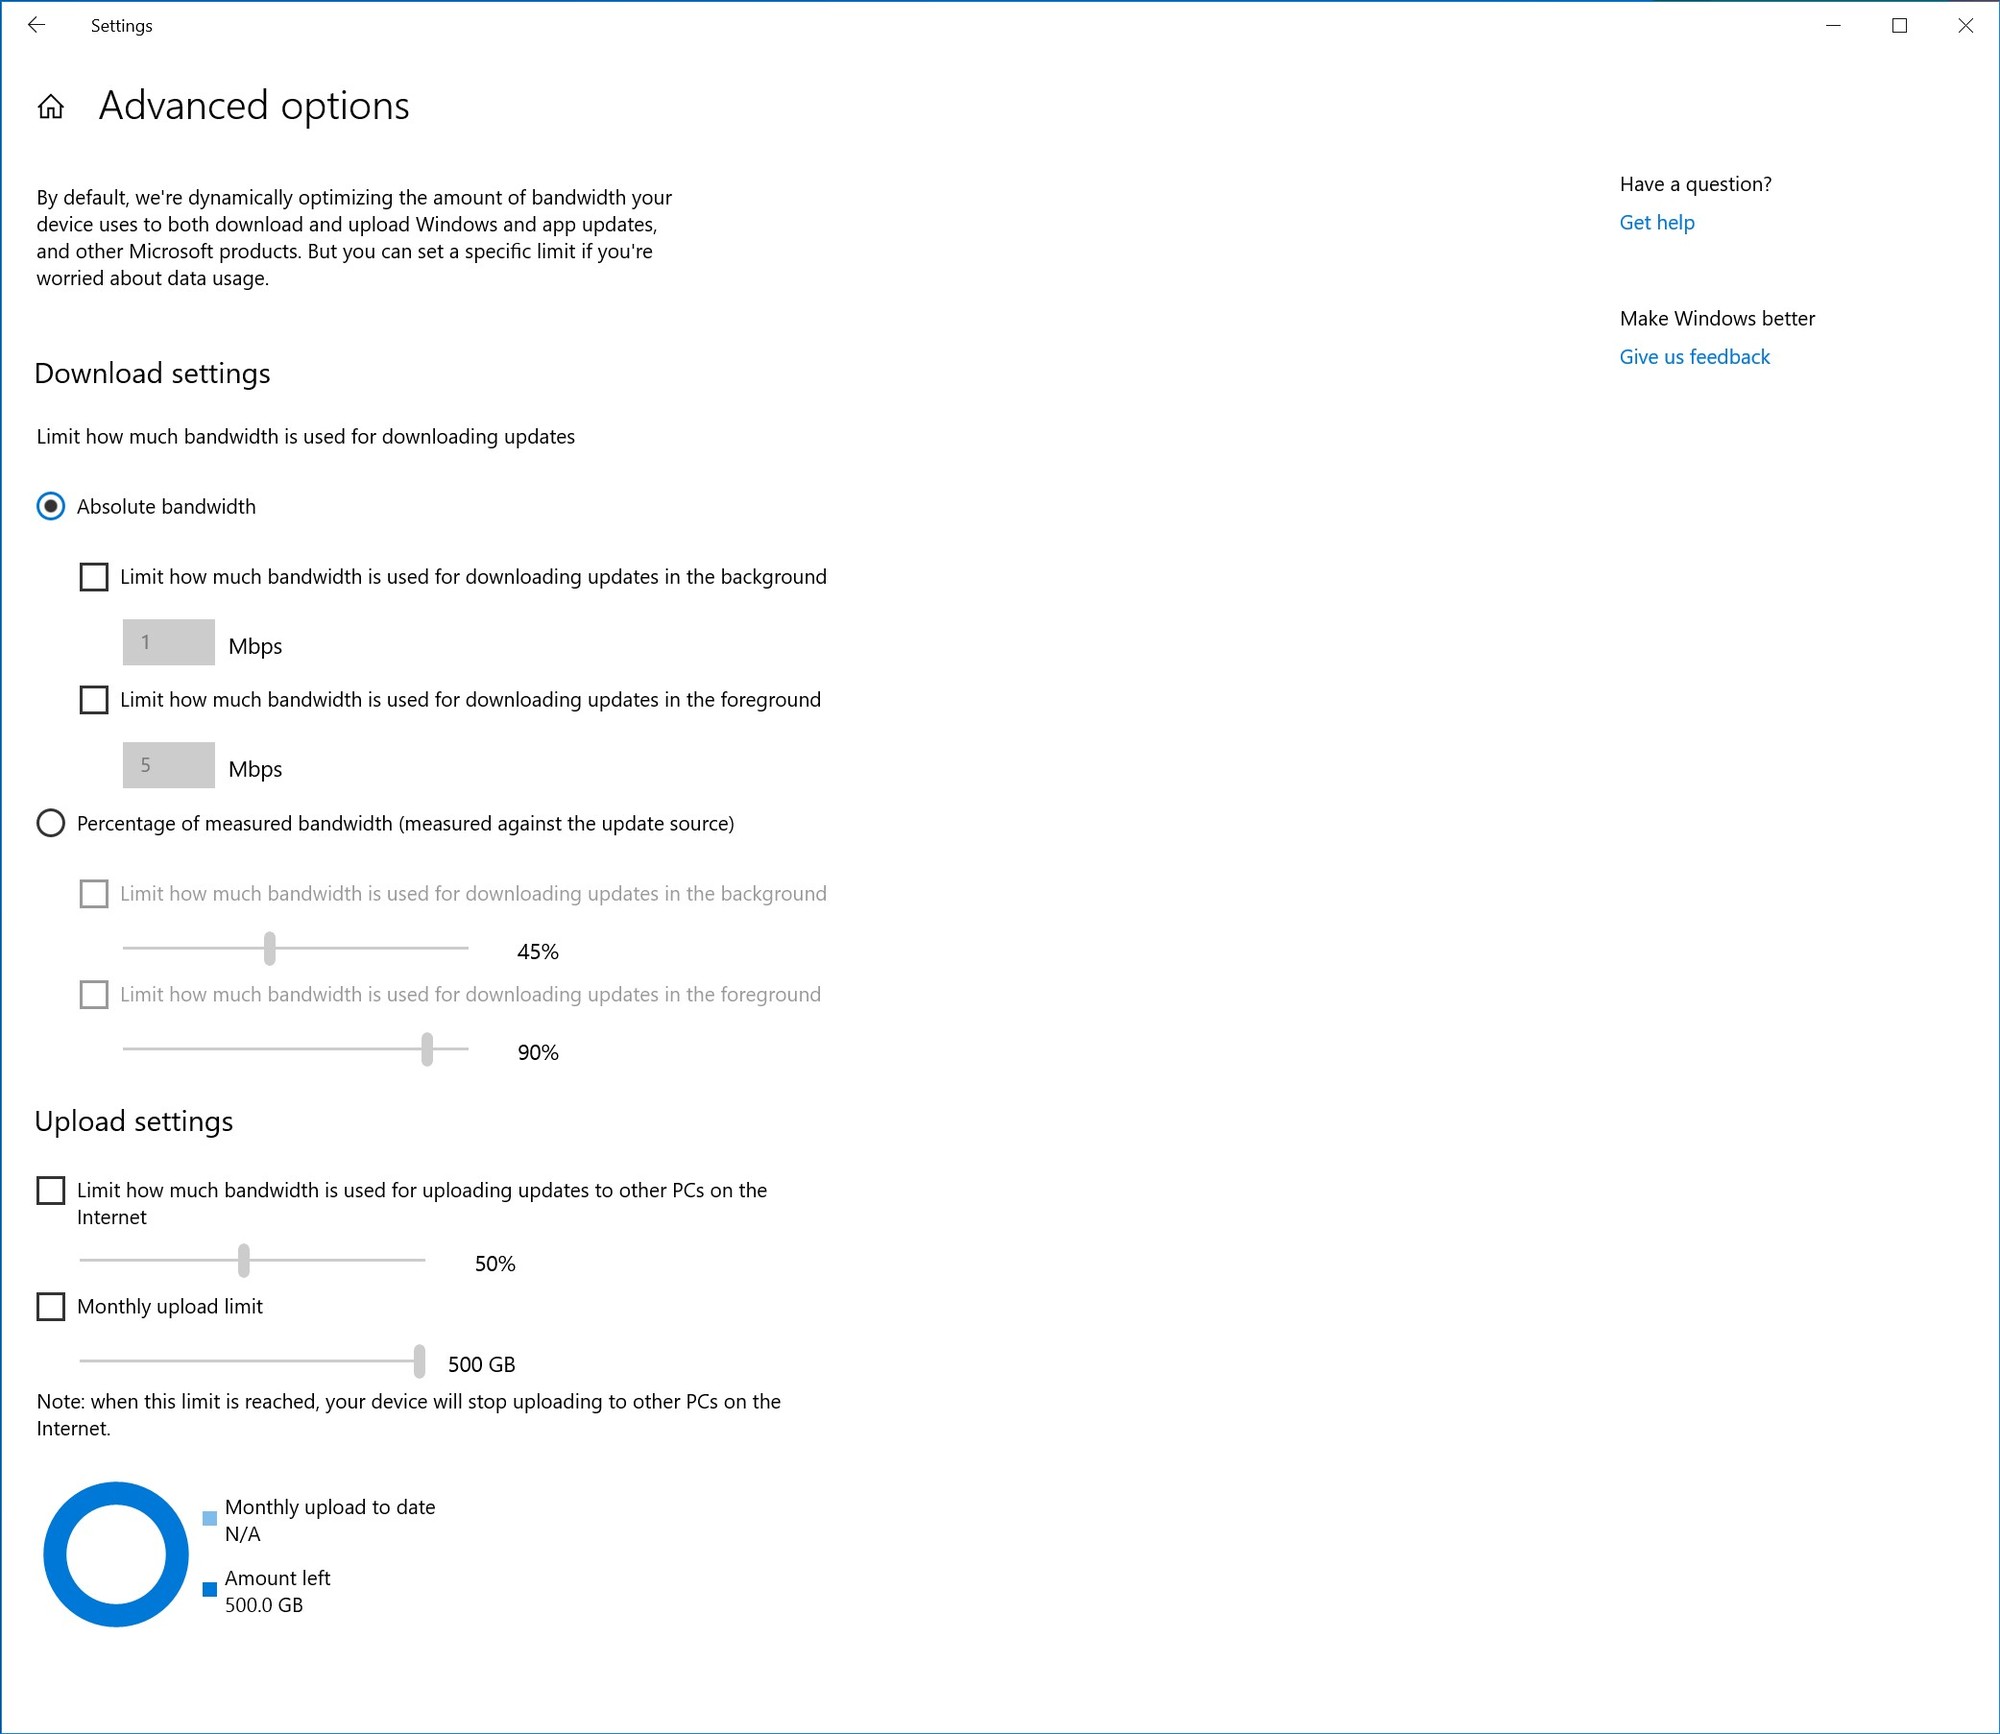 New Windows 10 Insider Preview Fast+Skip Build 18917 (20H1) - June 12 95fcd9500d8bba29db2b6b2b6597b4db.jpg